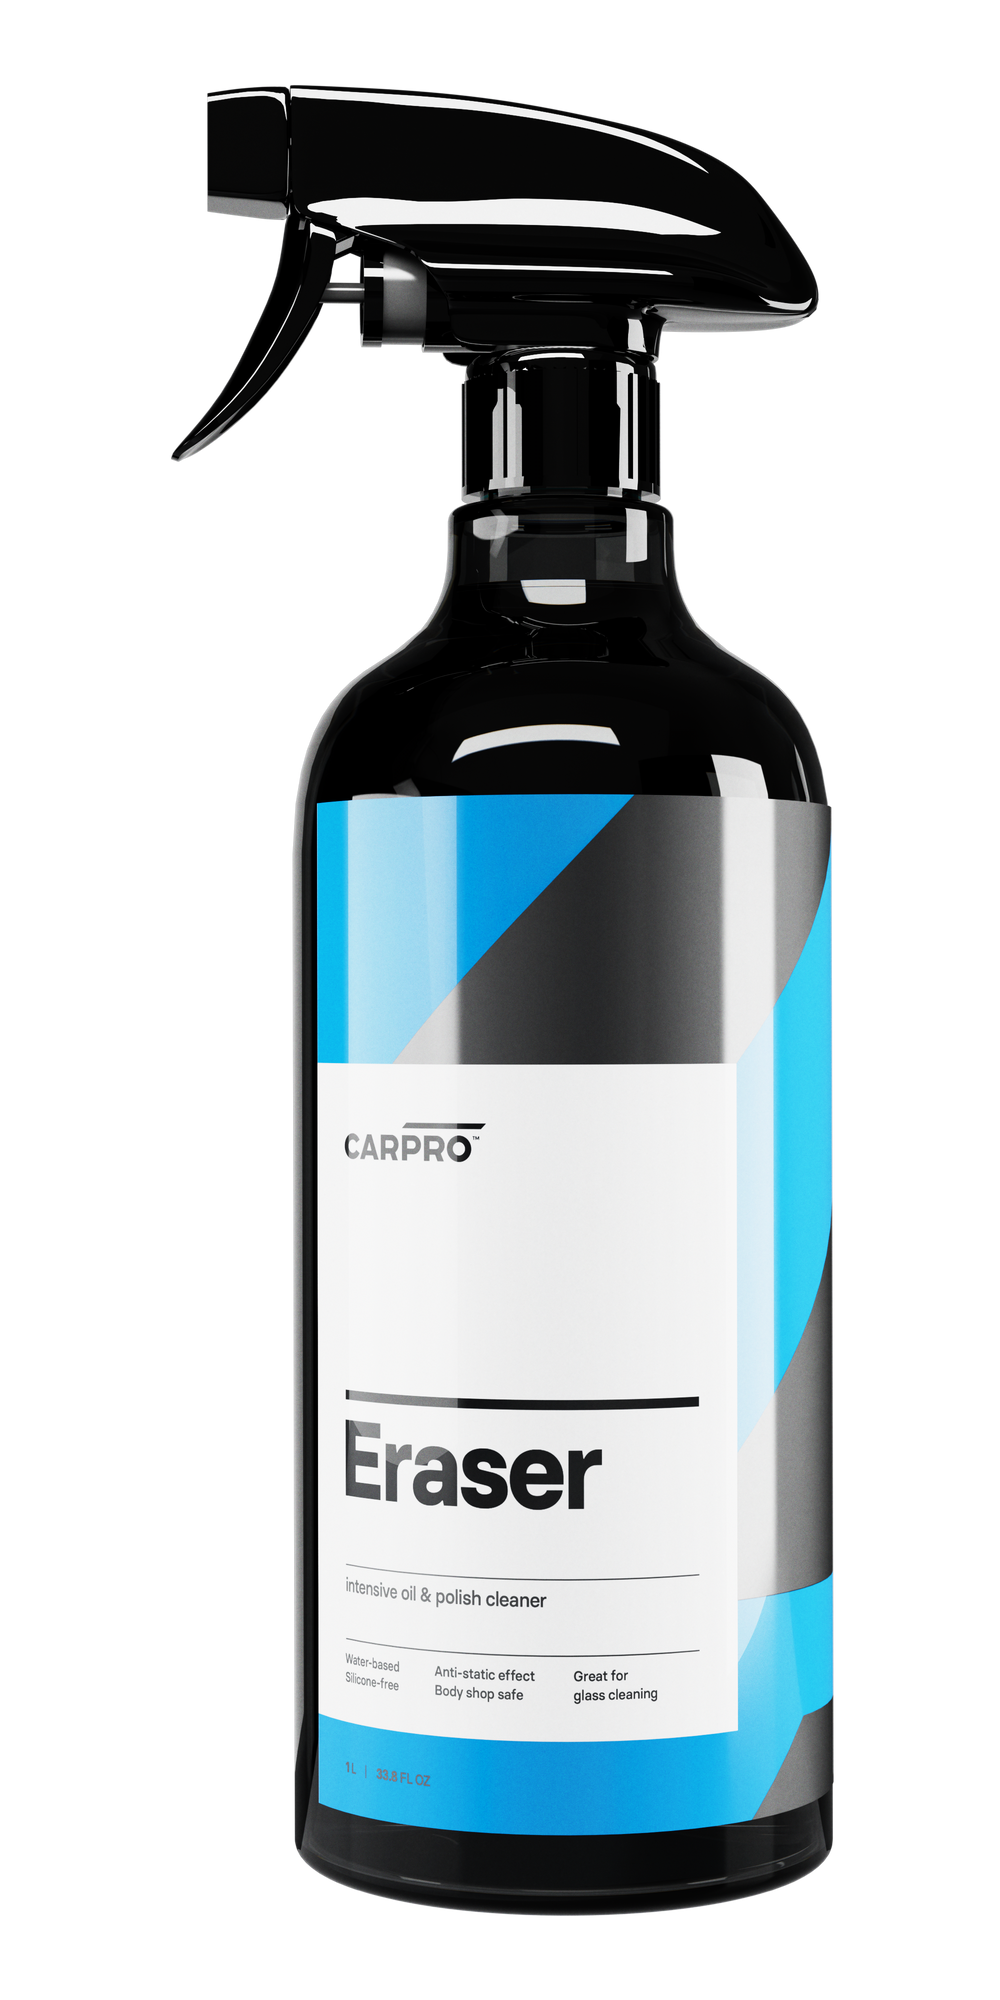 CARPRO Eraser 1L - Oil and polish cleaner